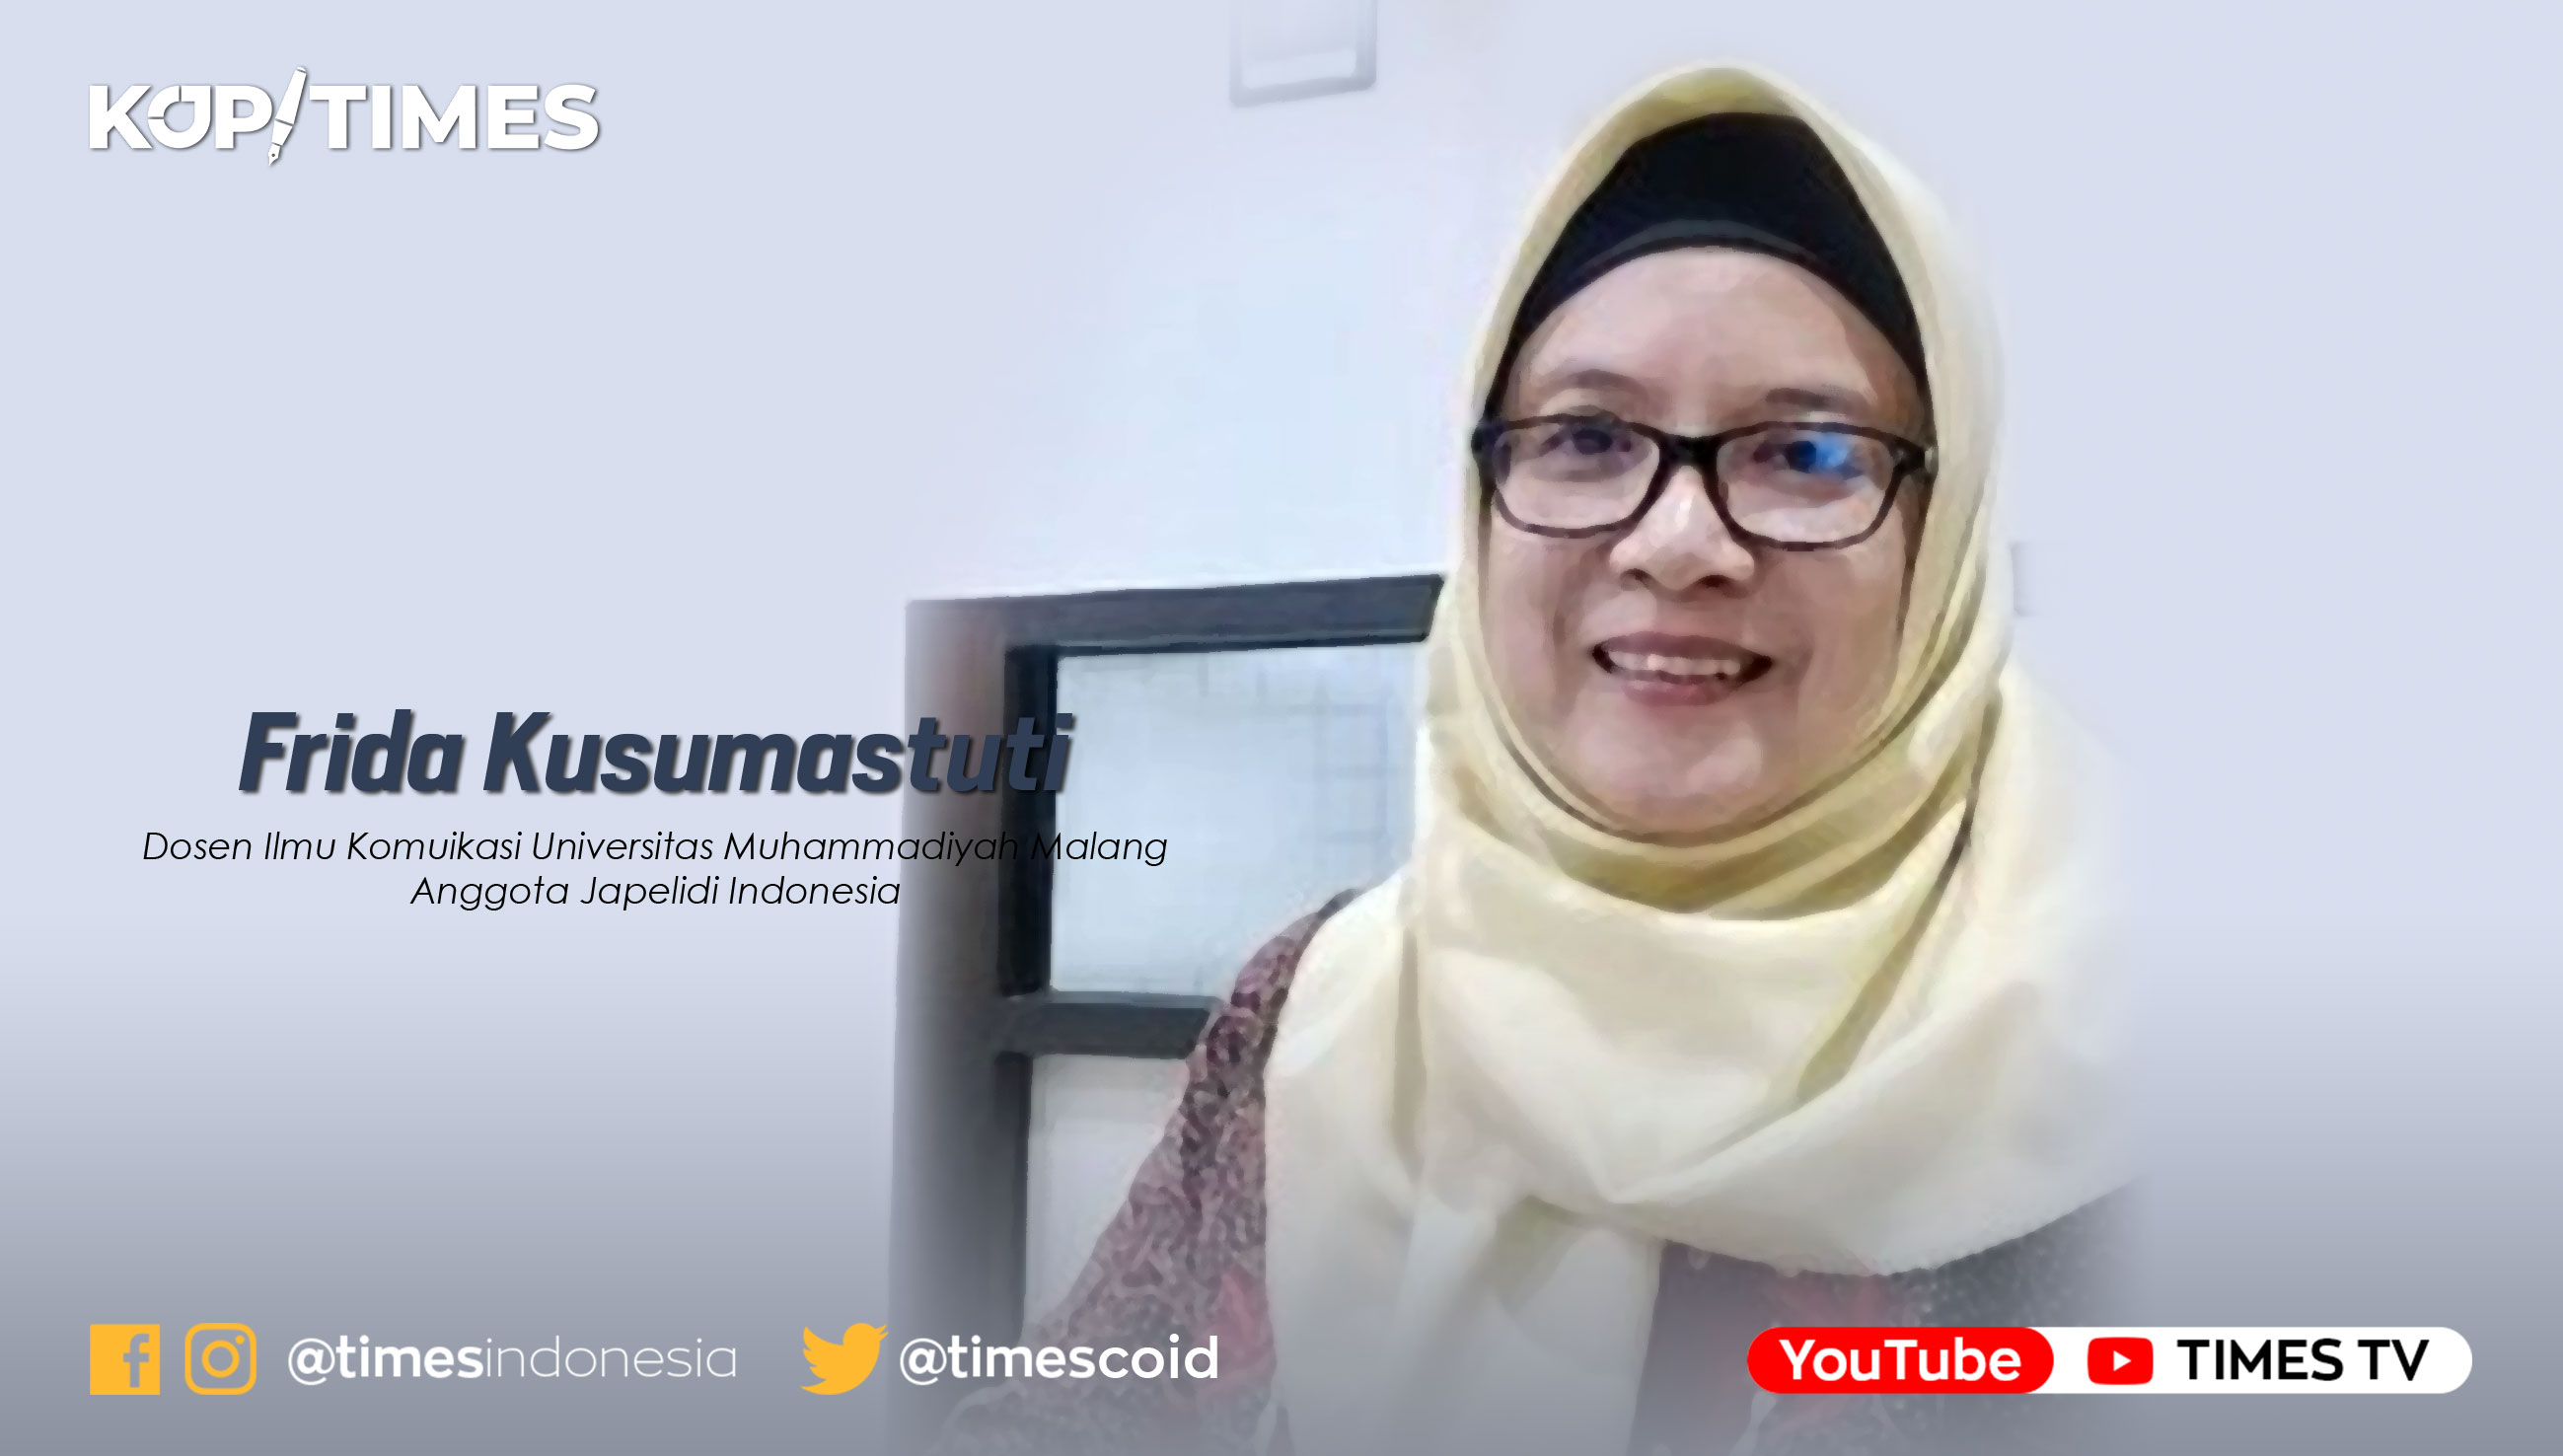 Frida Kusumastuti; Dosen Komunikasi Universitas Muhammadiyah Malang, Pegiat Japelidi Indonesia & Sukarelawan Mafindo Malang Raya.